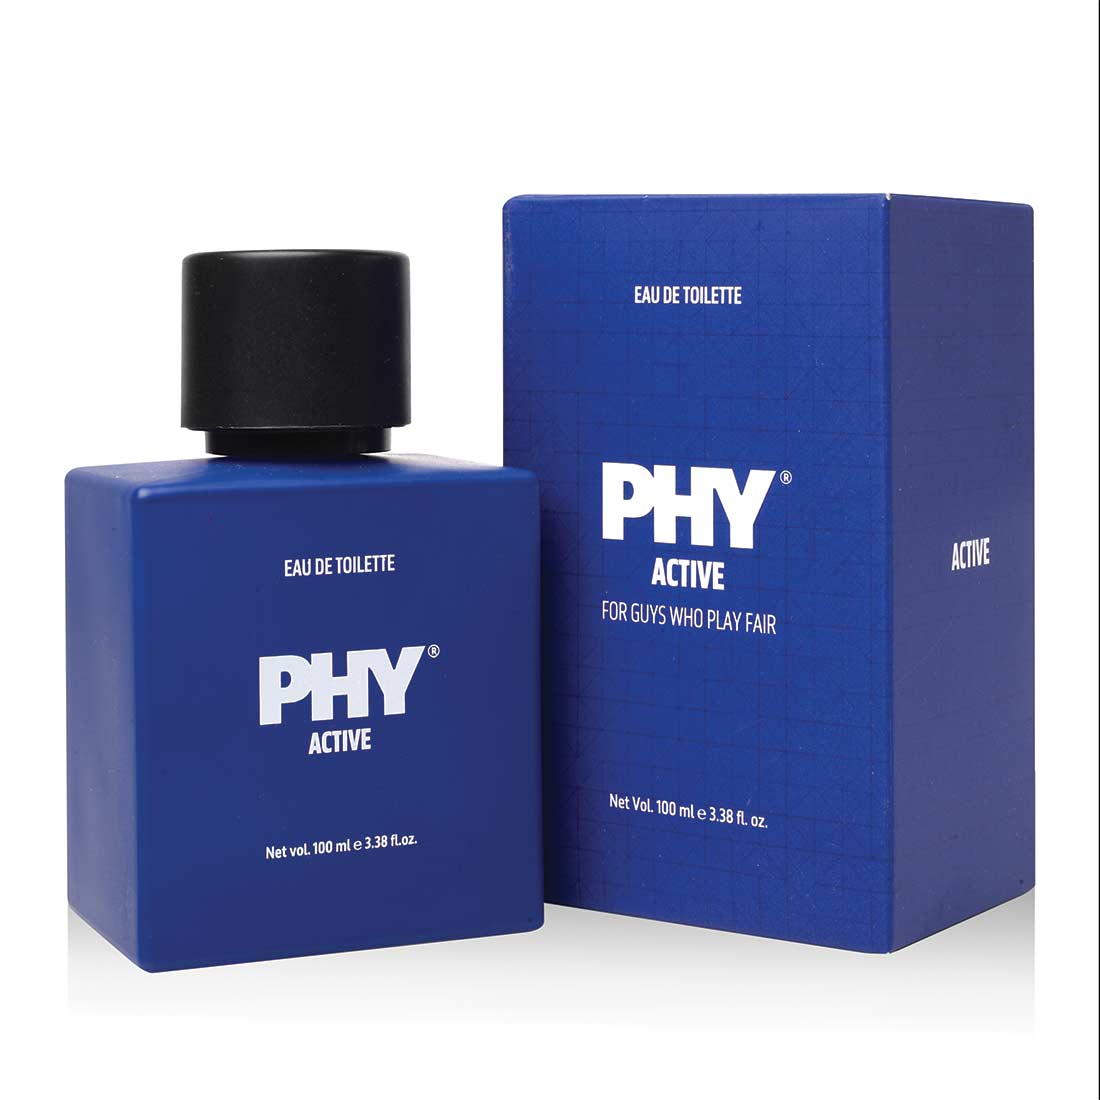 Phy Eau de toilette - Active - Men's Fragrance